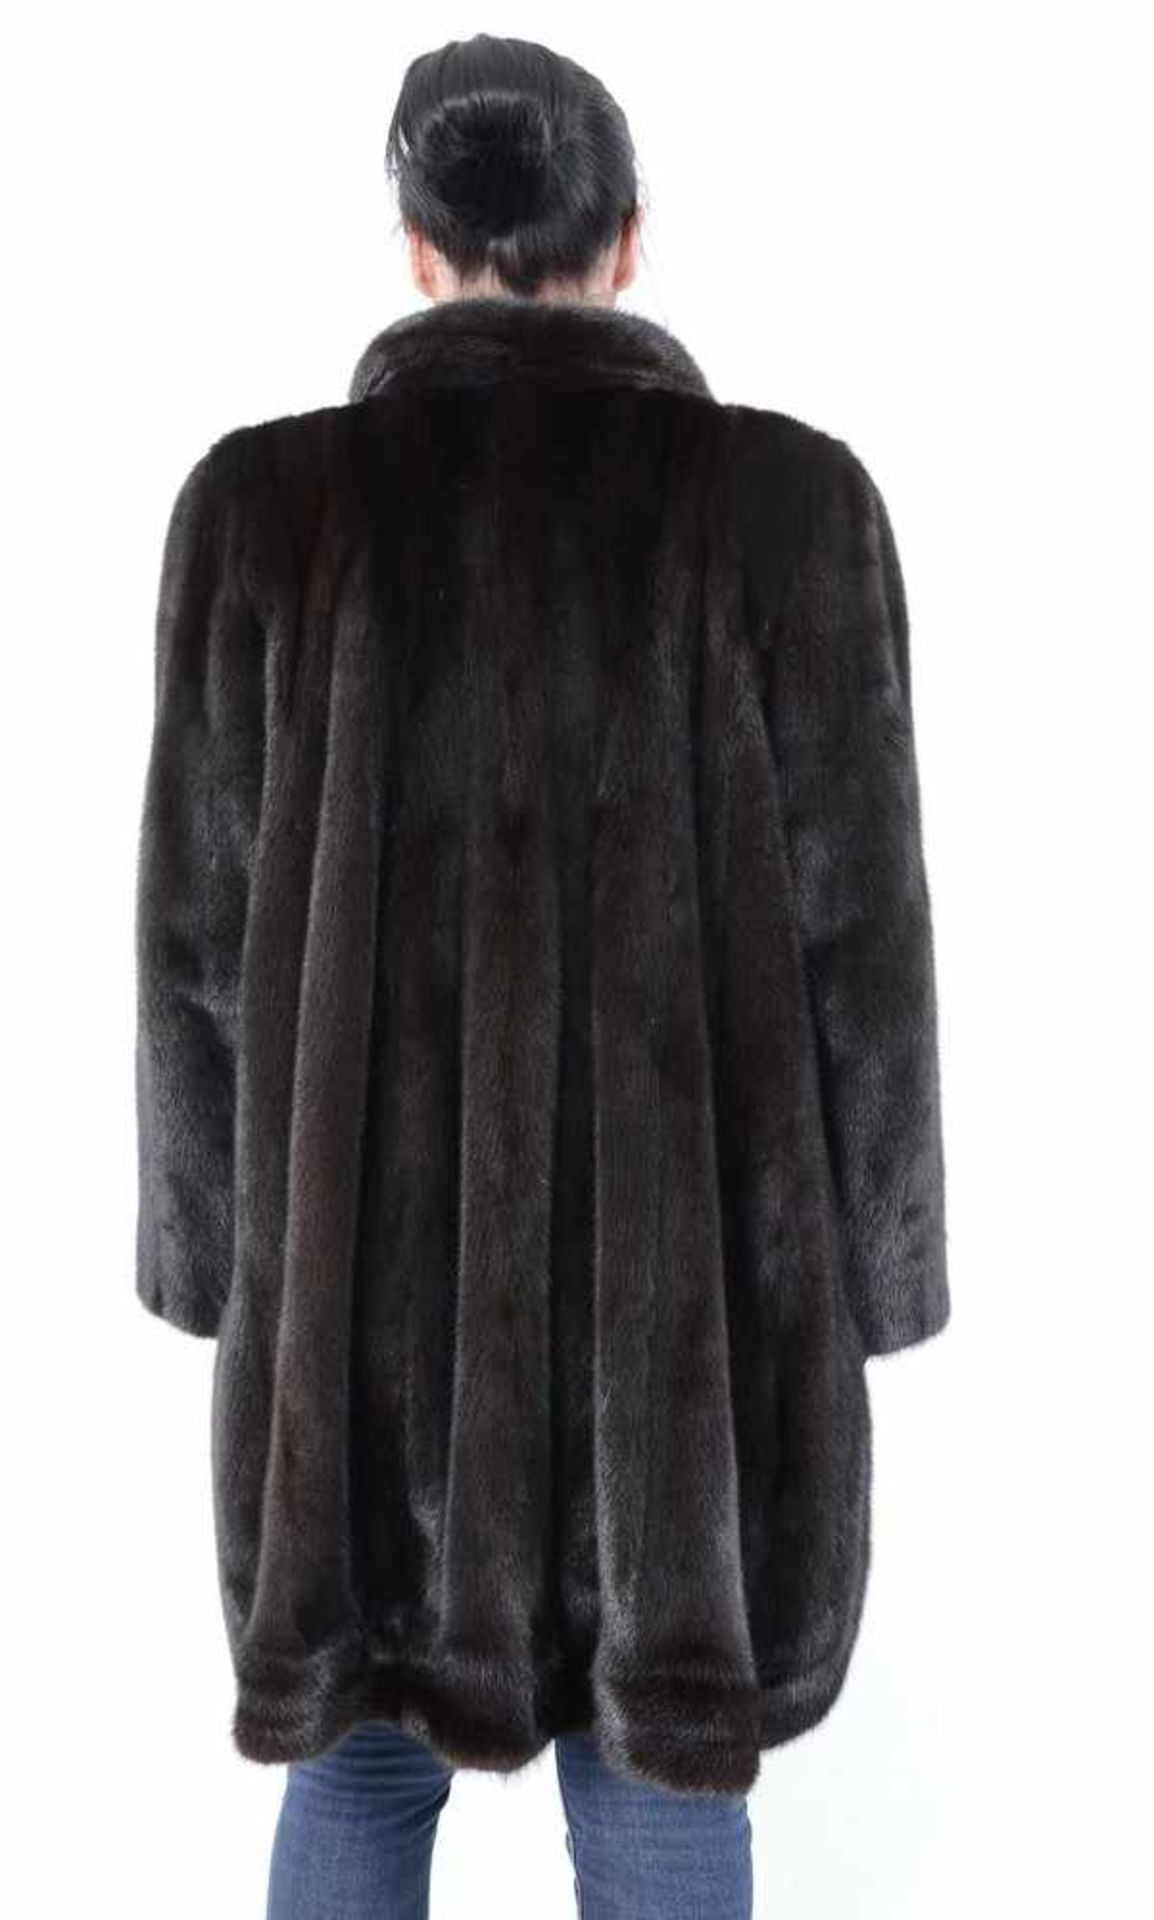 Pelzjacke Nerzjacke braun 3/4 lang - Mink Fur Jacket 3/4 Long, Size: 48 - XXL 2 Taschen, sehr - Bild 4 aus 9